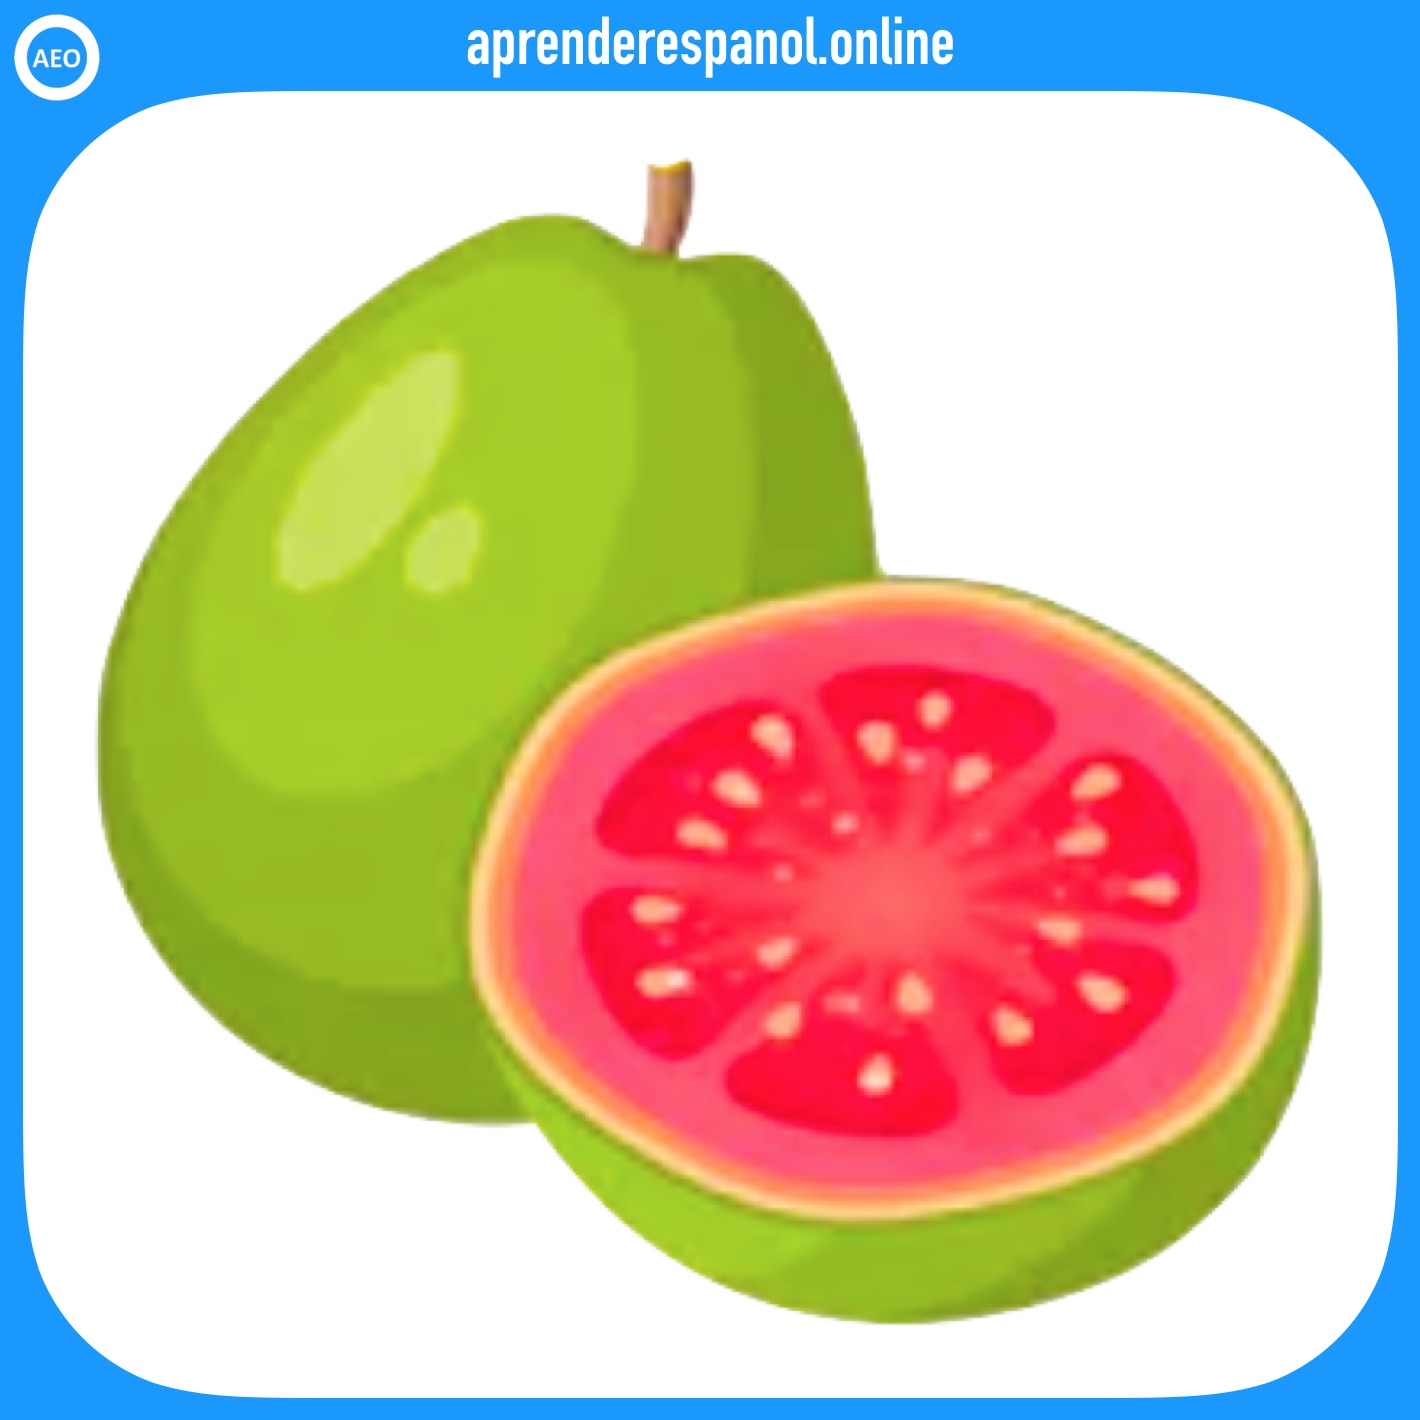 guayaba - frutas en español - vocabulario de las frutas en español